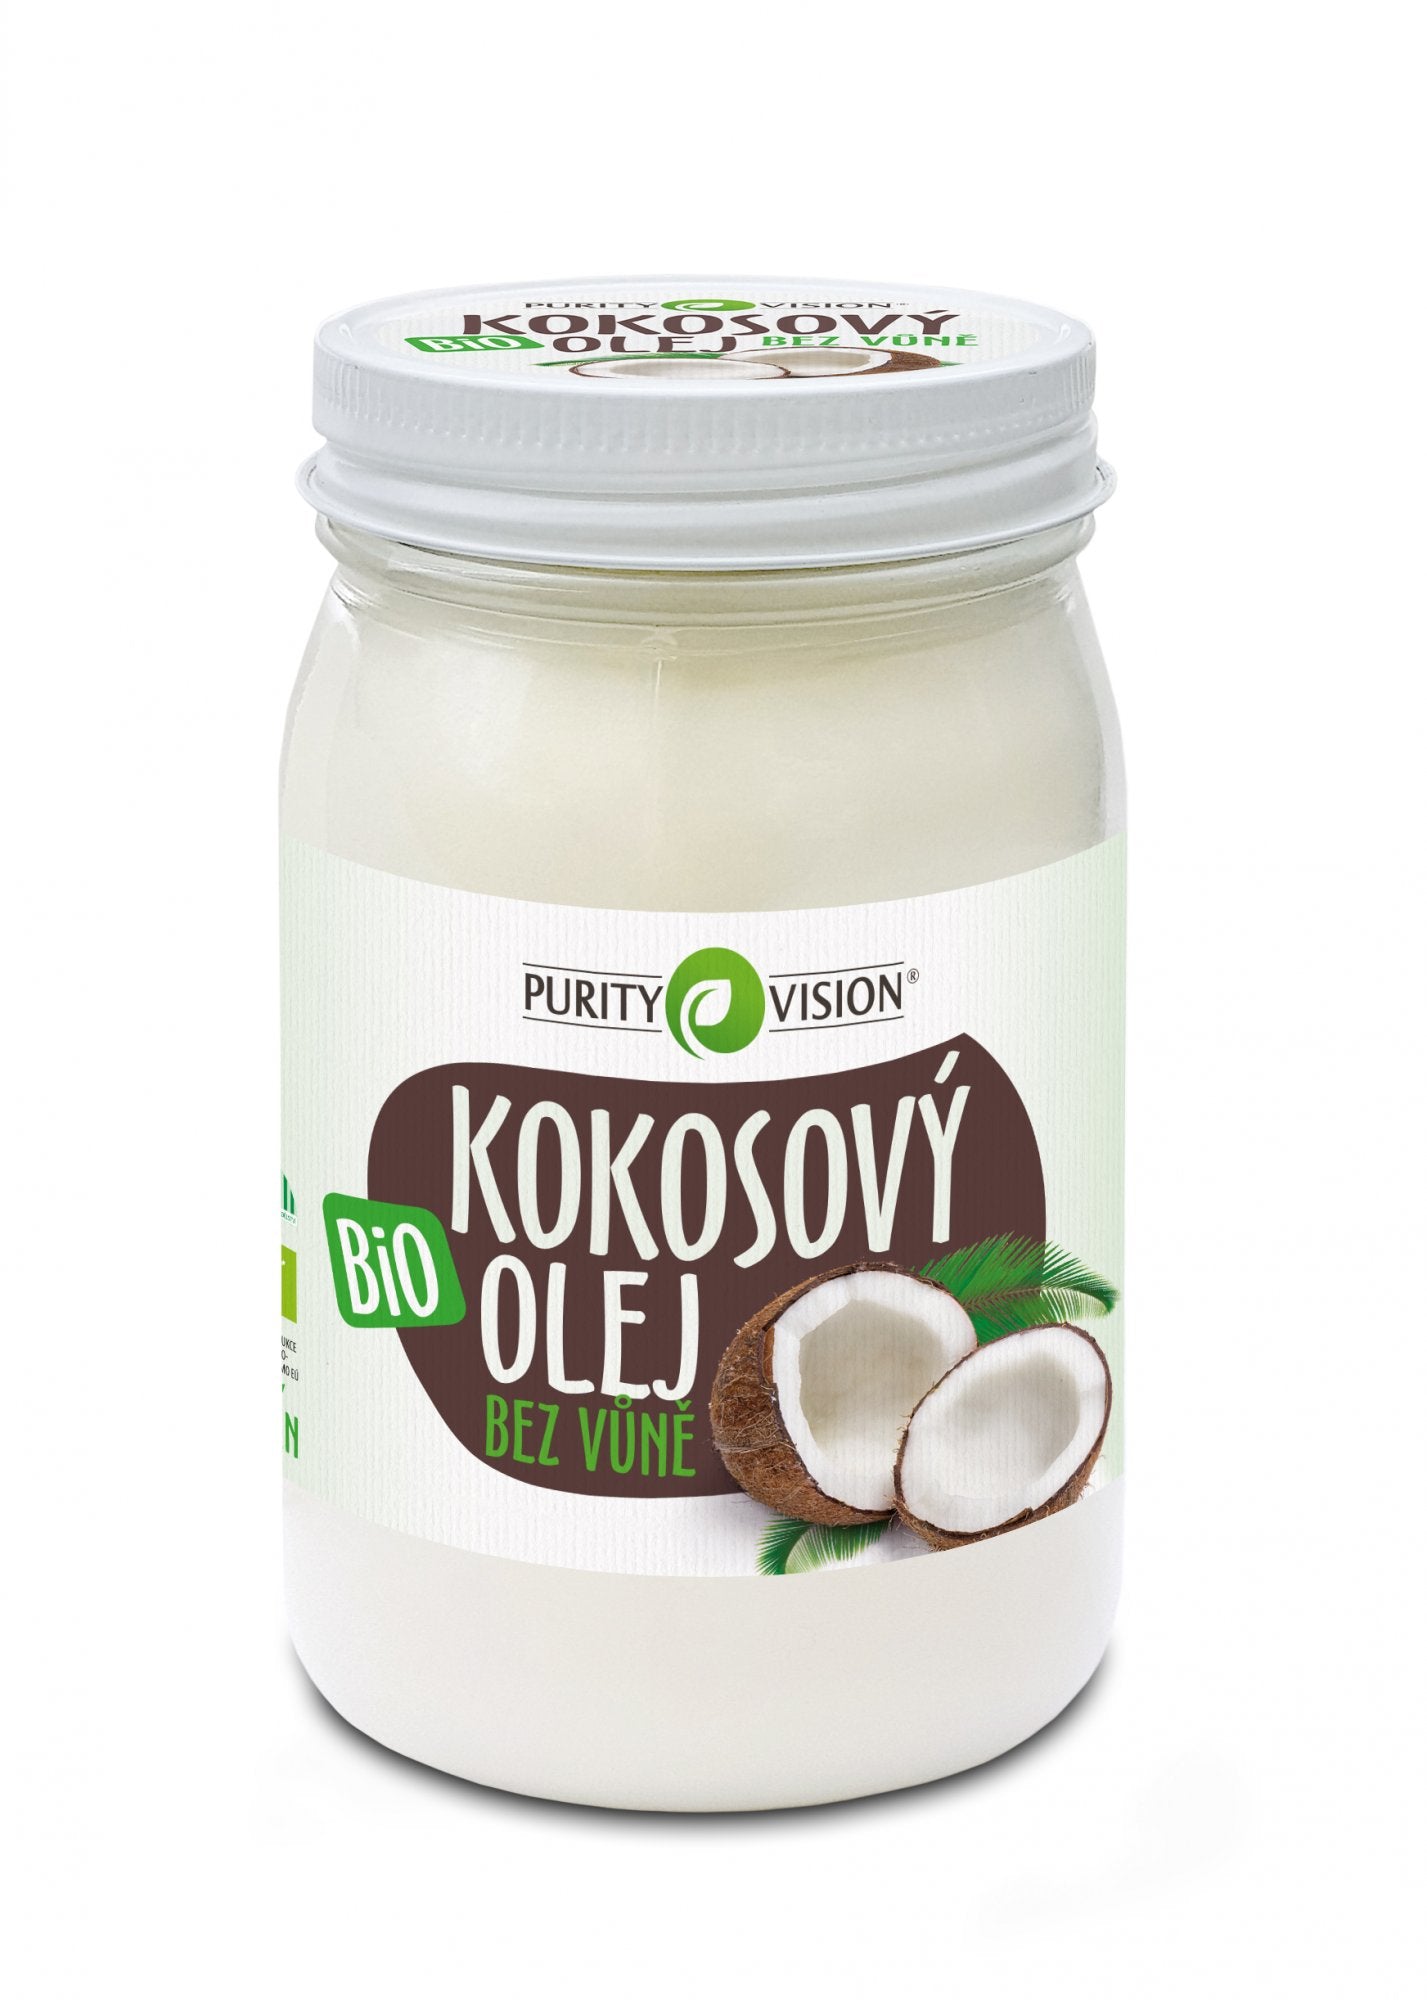 Purity Vision Kokosový olej bez vůně BIO 420 ml - bez typické kokosové vůně a chuti Purity Vision